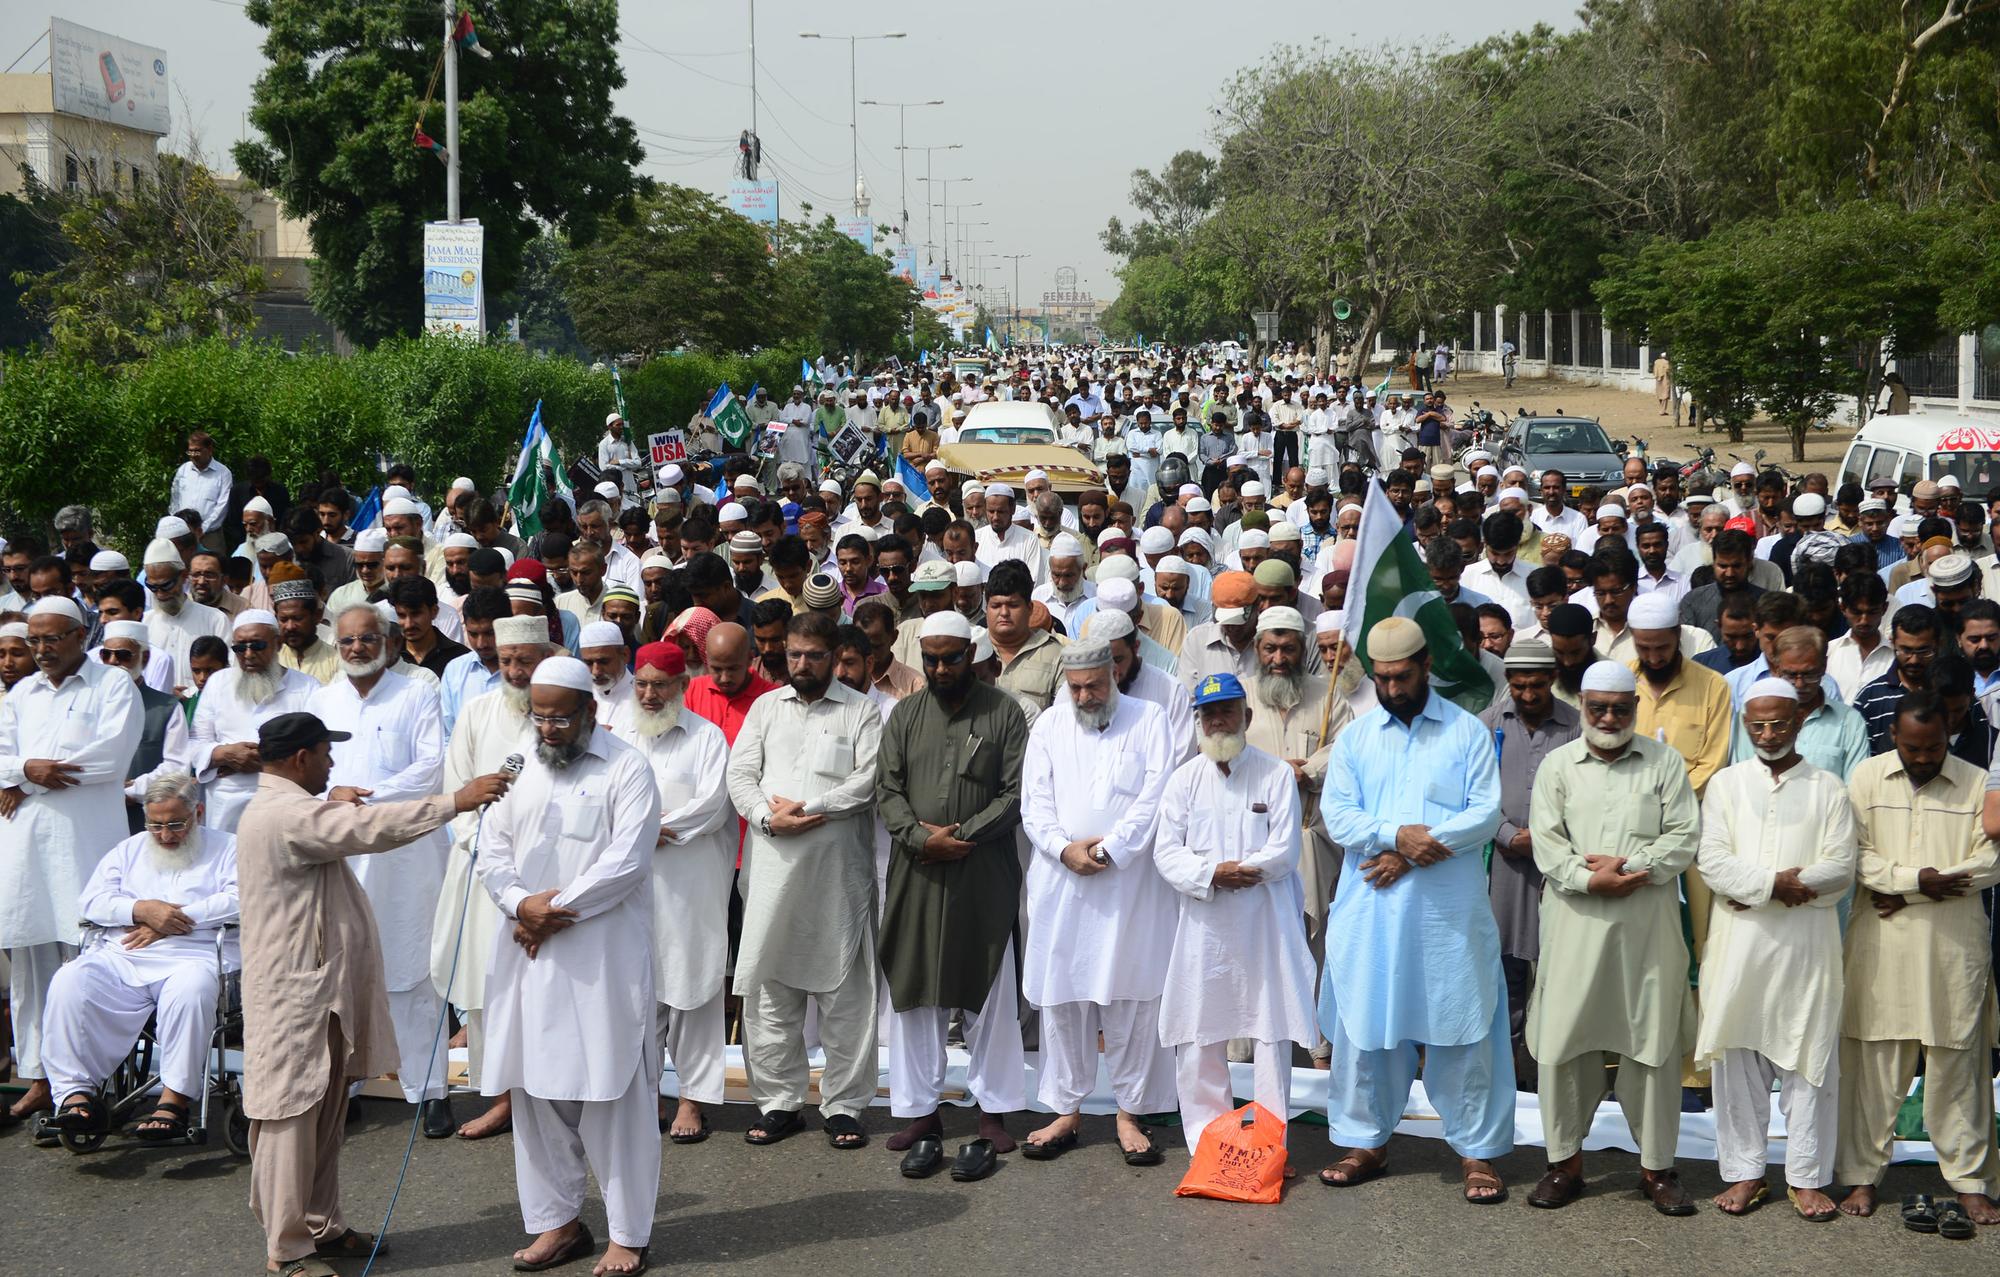 Manifestation Pakistan de soutien aux manifestants en Egypte [AFP - RIZWAN TABASSUM]